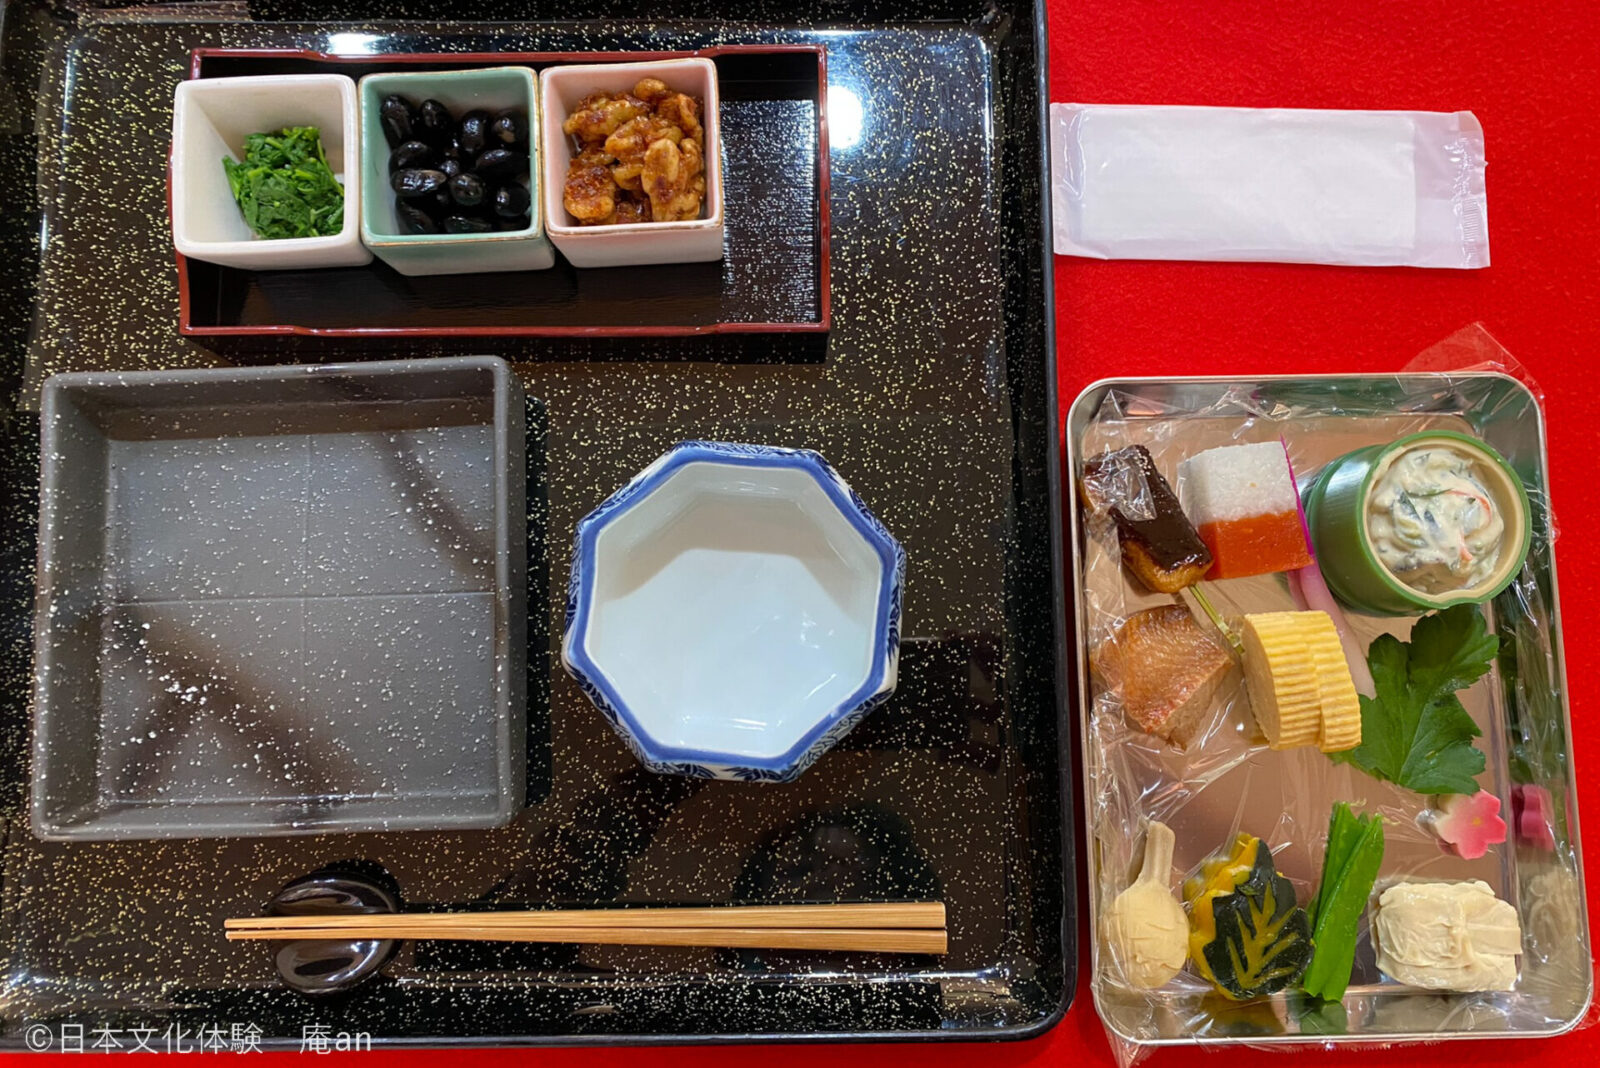 【朝から京都の仕出し文化を体験】京都で味わう老舗仕出し割烹の朝食会席盛り付け体験 画像4